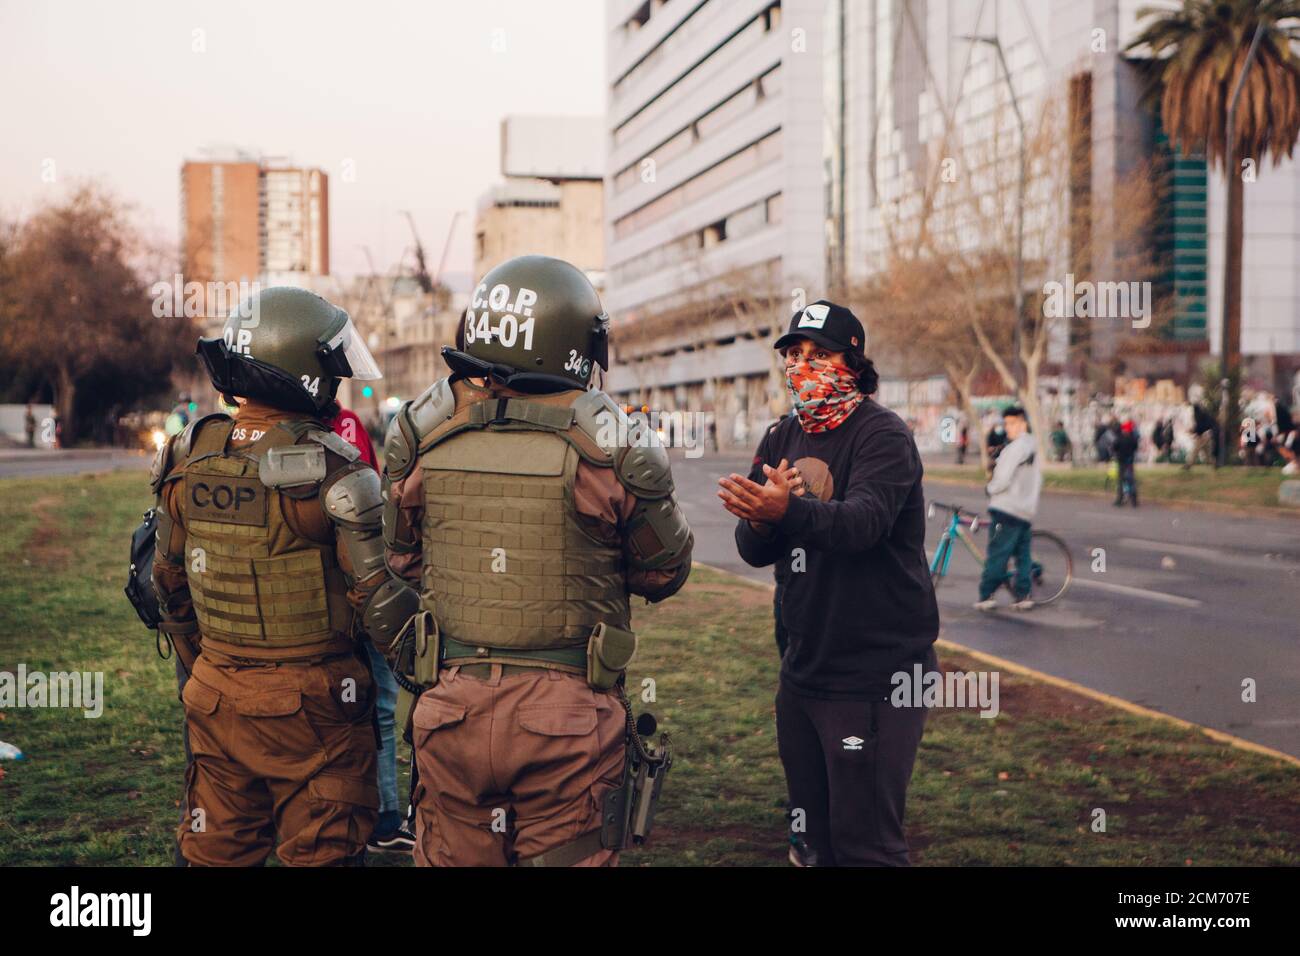 SANTIAGO, CHILE - 11. SEPTEMBER 2020 - EIN junger Mann tadelt die Bereitschaftspolizei wegen Rüge während einer Demonstration. Hunderte von Menschen kamen auf die Plaza Baqu Stockfoto